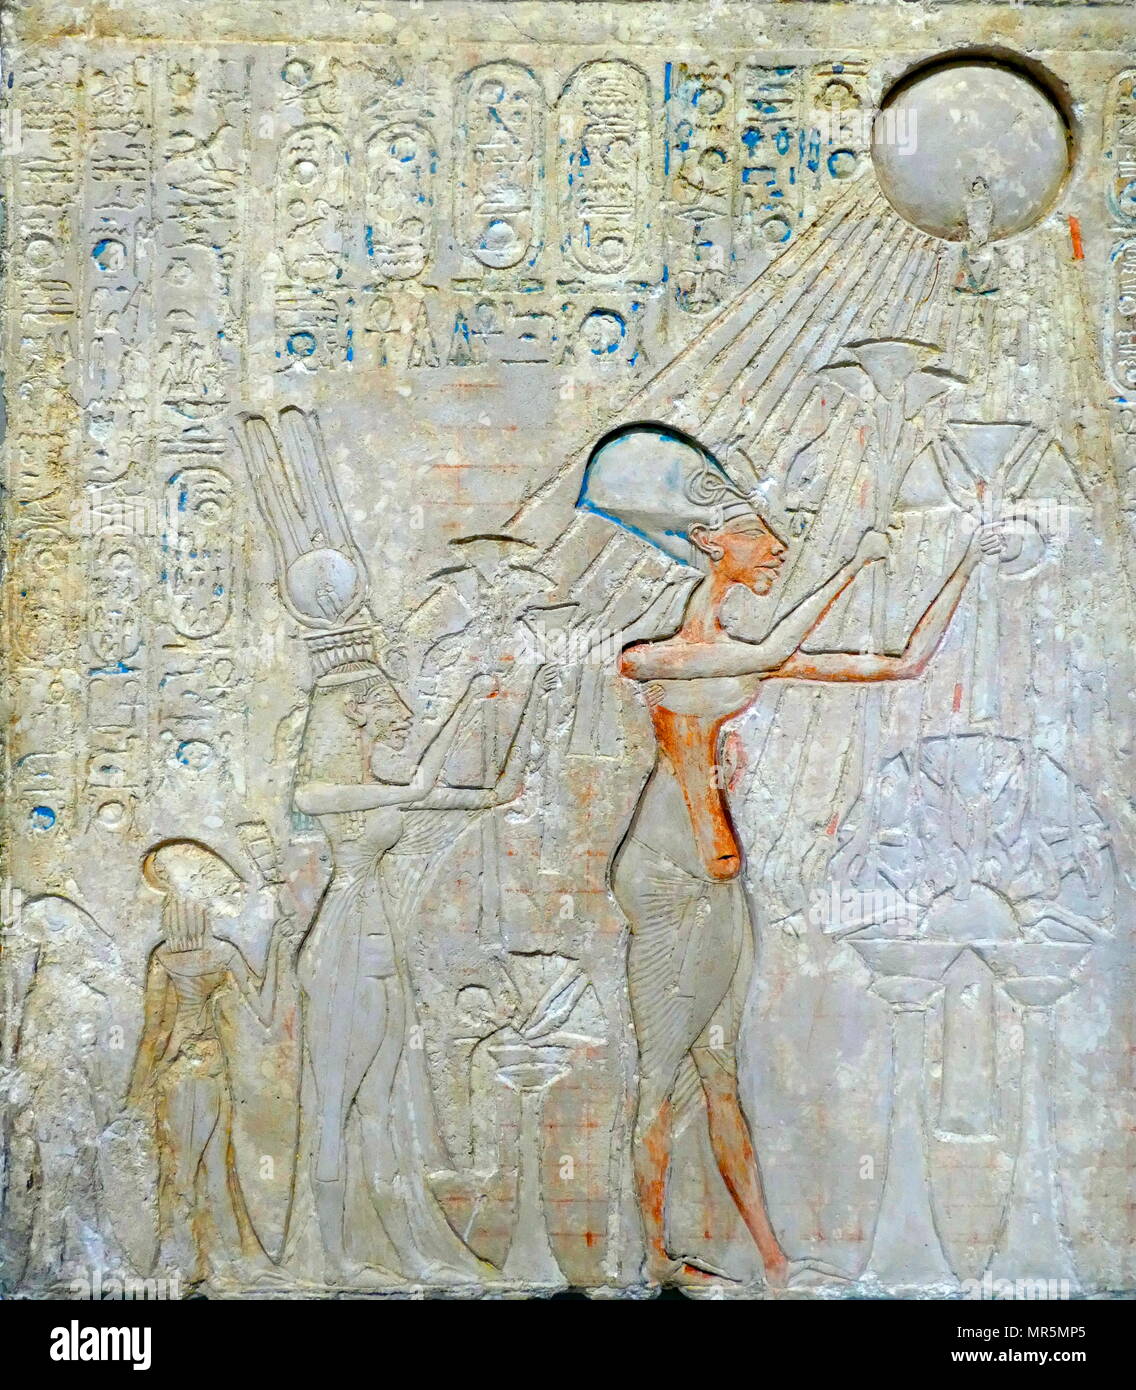 Estela en representación de Akhenaton y Nefertiti, hijas de adorar el disco solar Atón. El rey Akhenaton, gobernaron Egipto durante 17 años: él cambió el estado culto de Amón Ra de Aten, y trasladó la capital de Tebas a Tell el-Amarna. Foto de stock